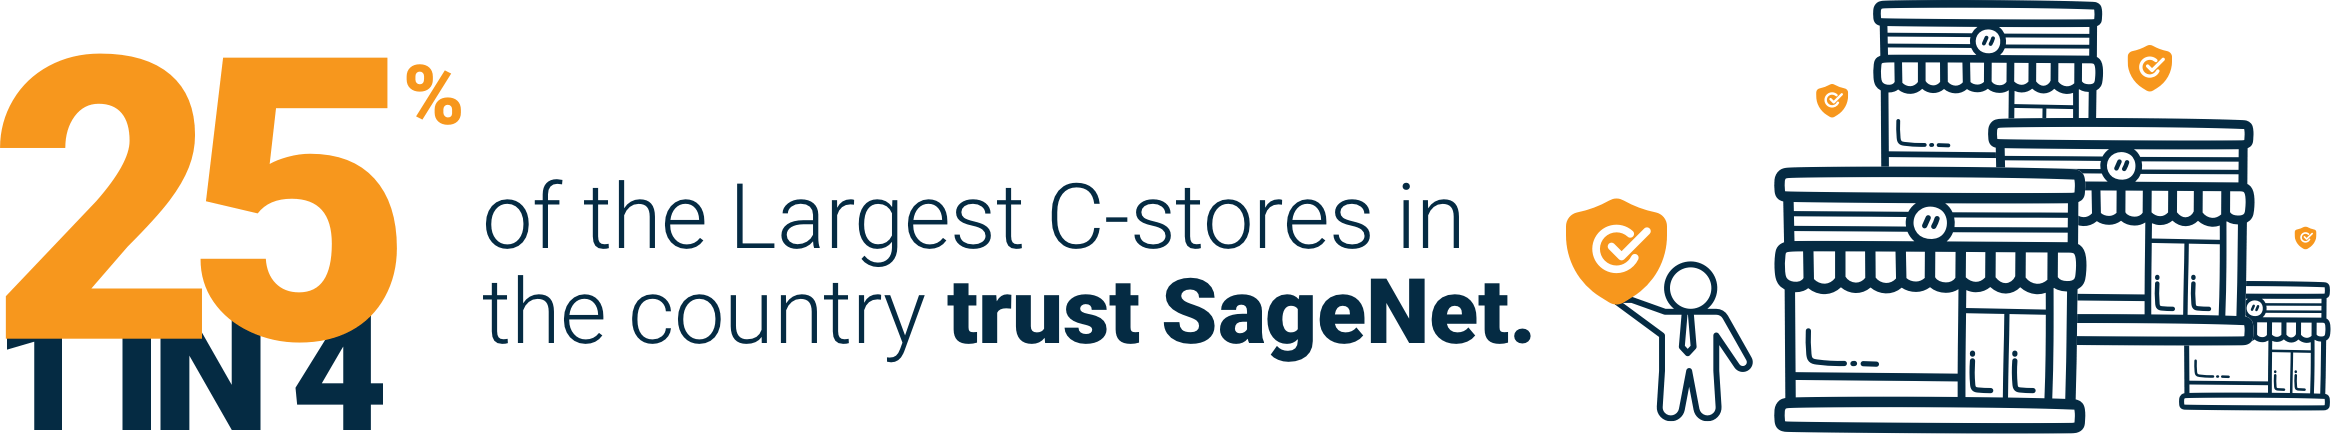 1 In 4 C Ctore Trust Sagenet4